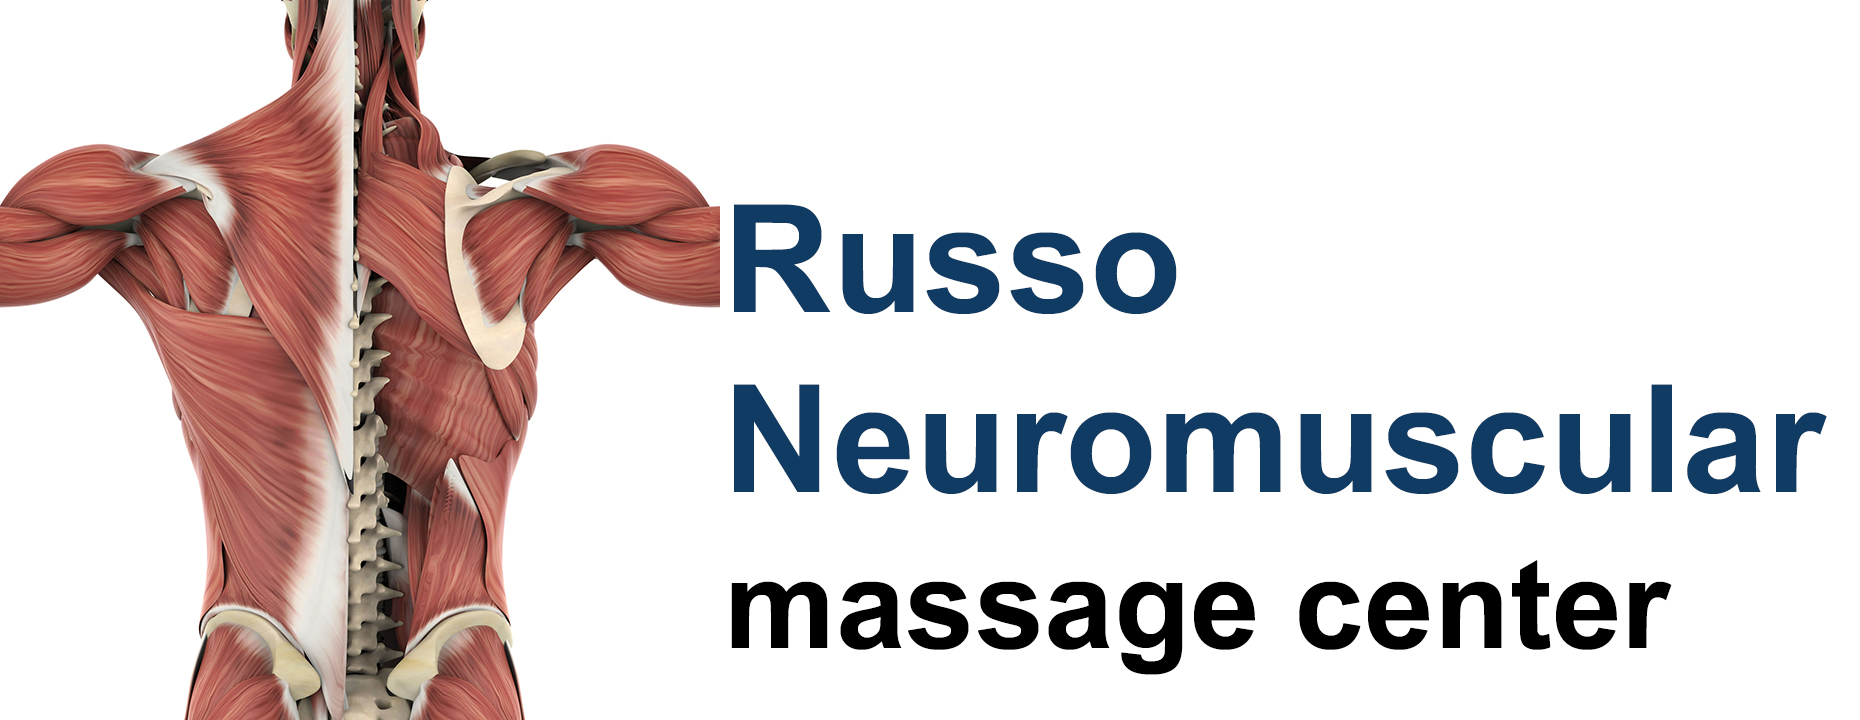 Russo Neuromuscular Massage Center